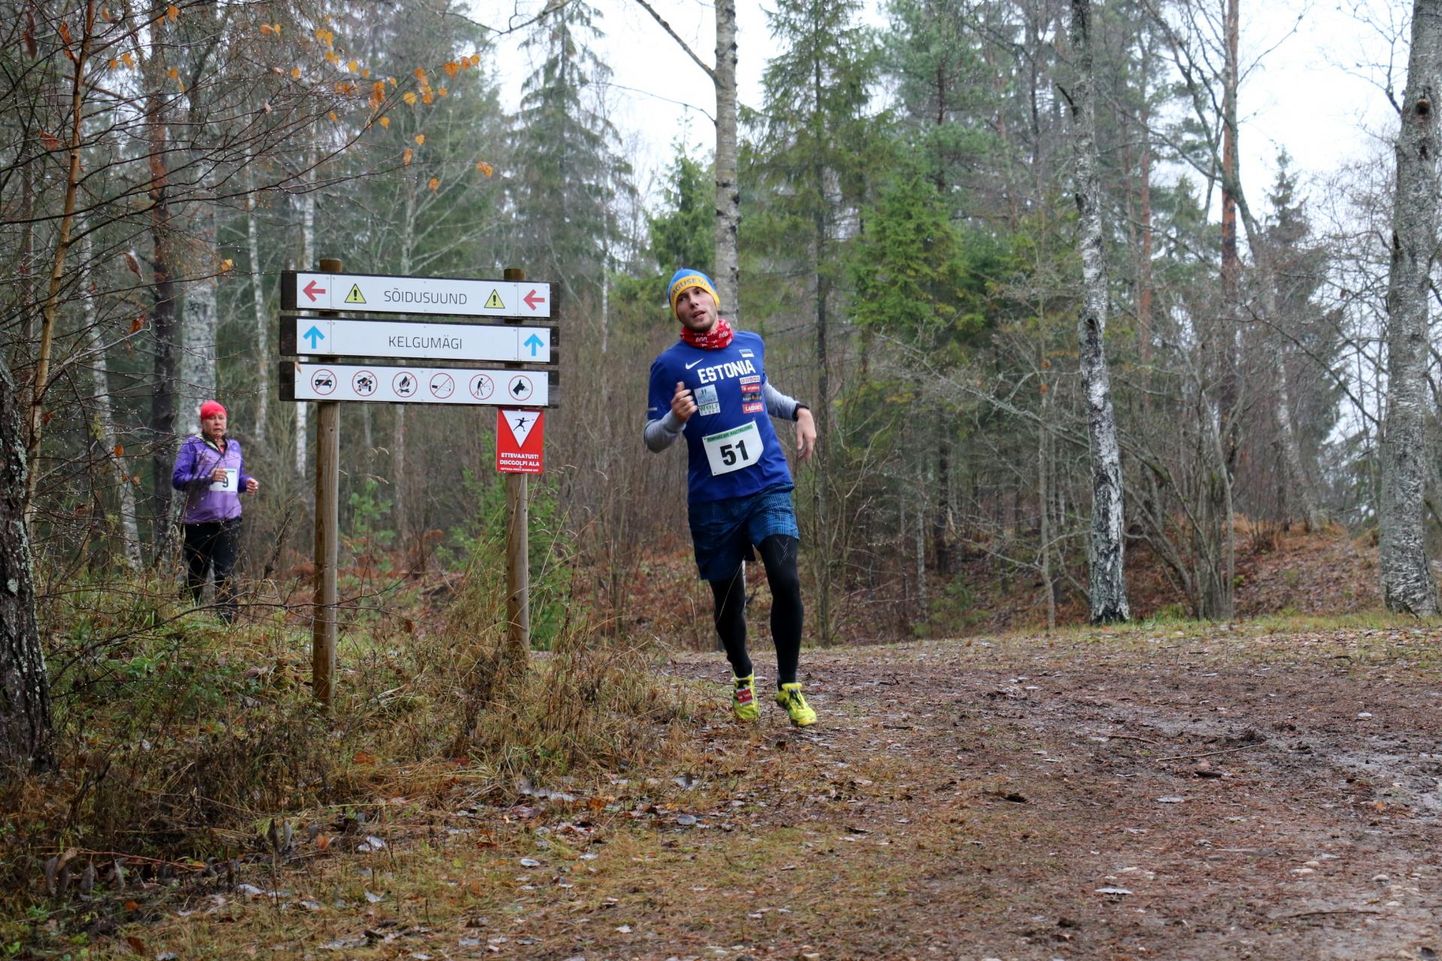 Suuremal osal Eestis sellel aastal korraldatud jooksuvõistlustel on esimesena finišeerinud Dmitri Aristov. Sama mees pani taskusse ka Reinpauli maastikujooksu võidu Ebaveres.